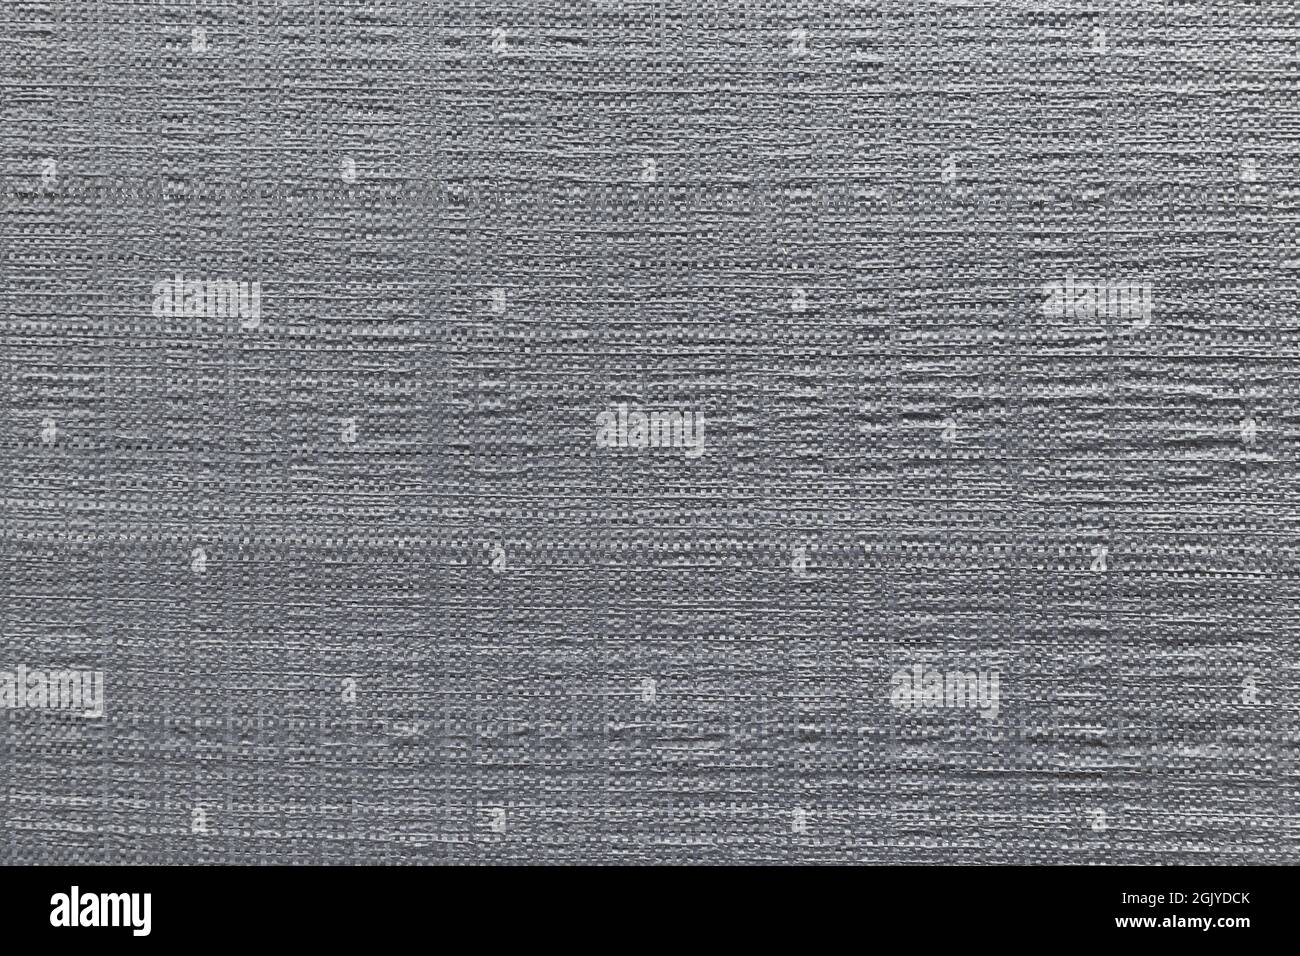 Nahaufnahme von grauem Kunststoff-Webtarp-Material. Abstrakter, hochauflösender, texturierter Hintergrund im Vollformat in Schwarzweiß. Speicherplatz kopieren. Stockfoto